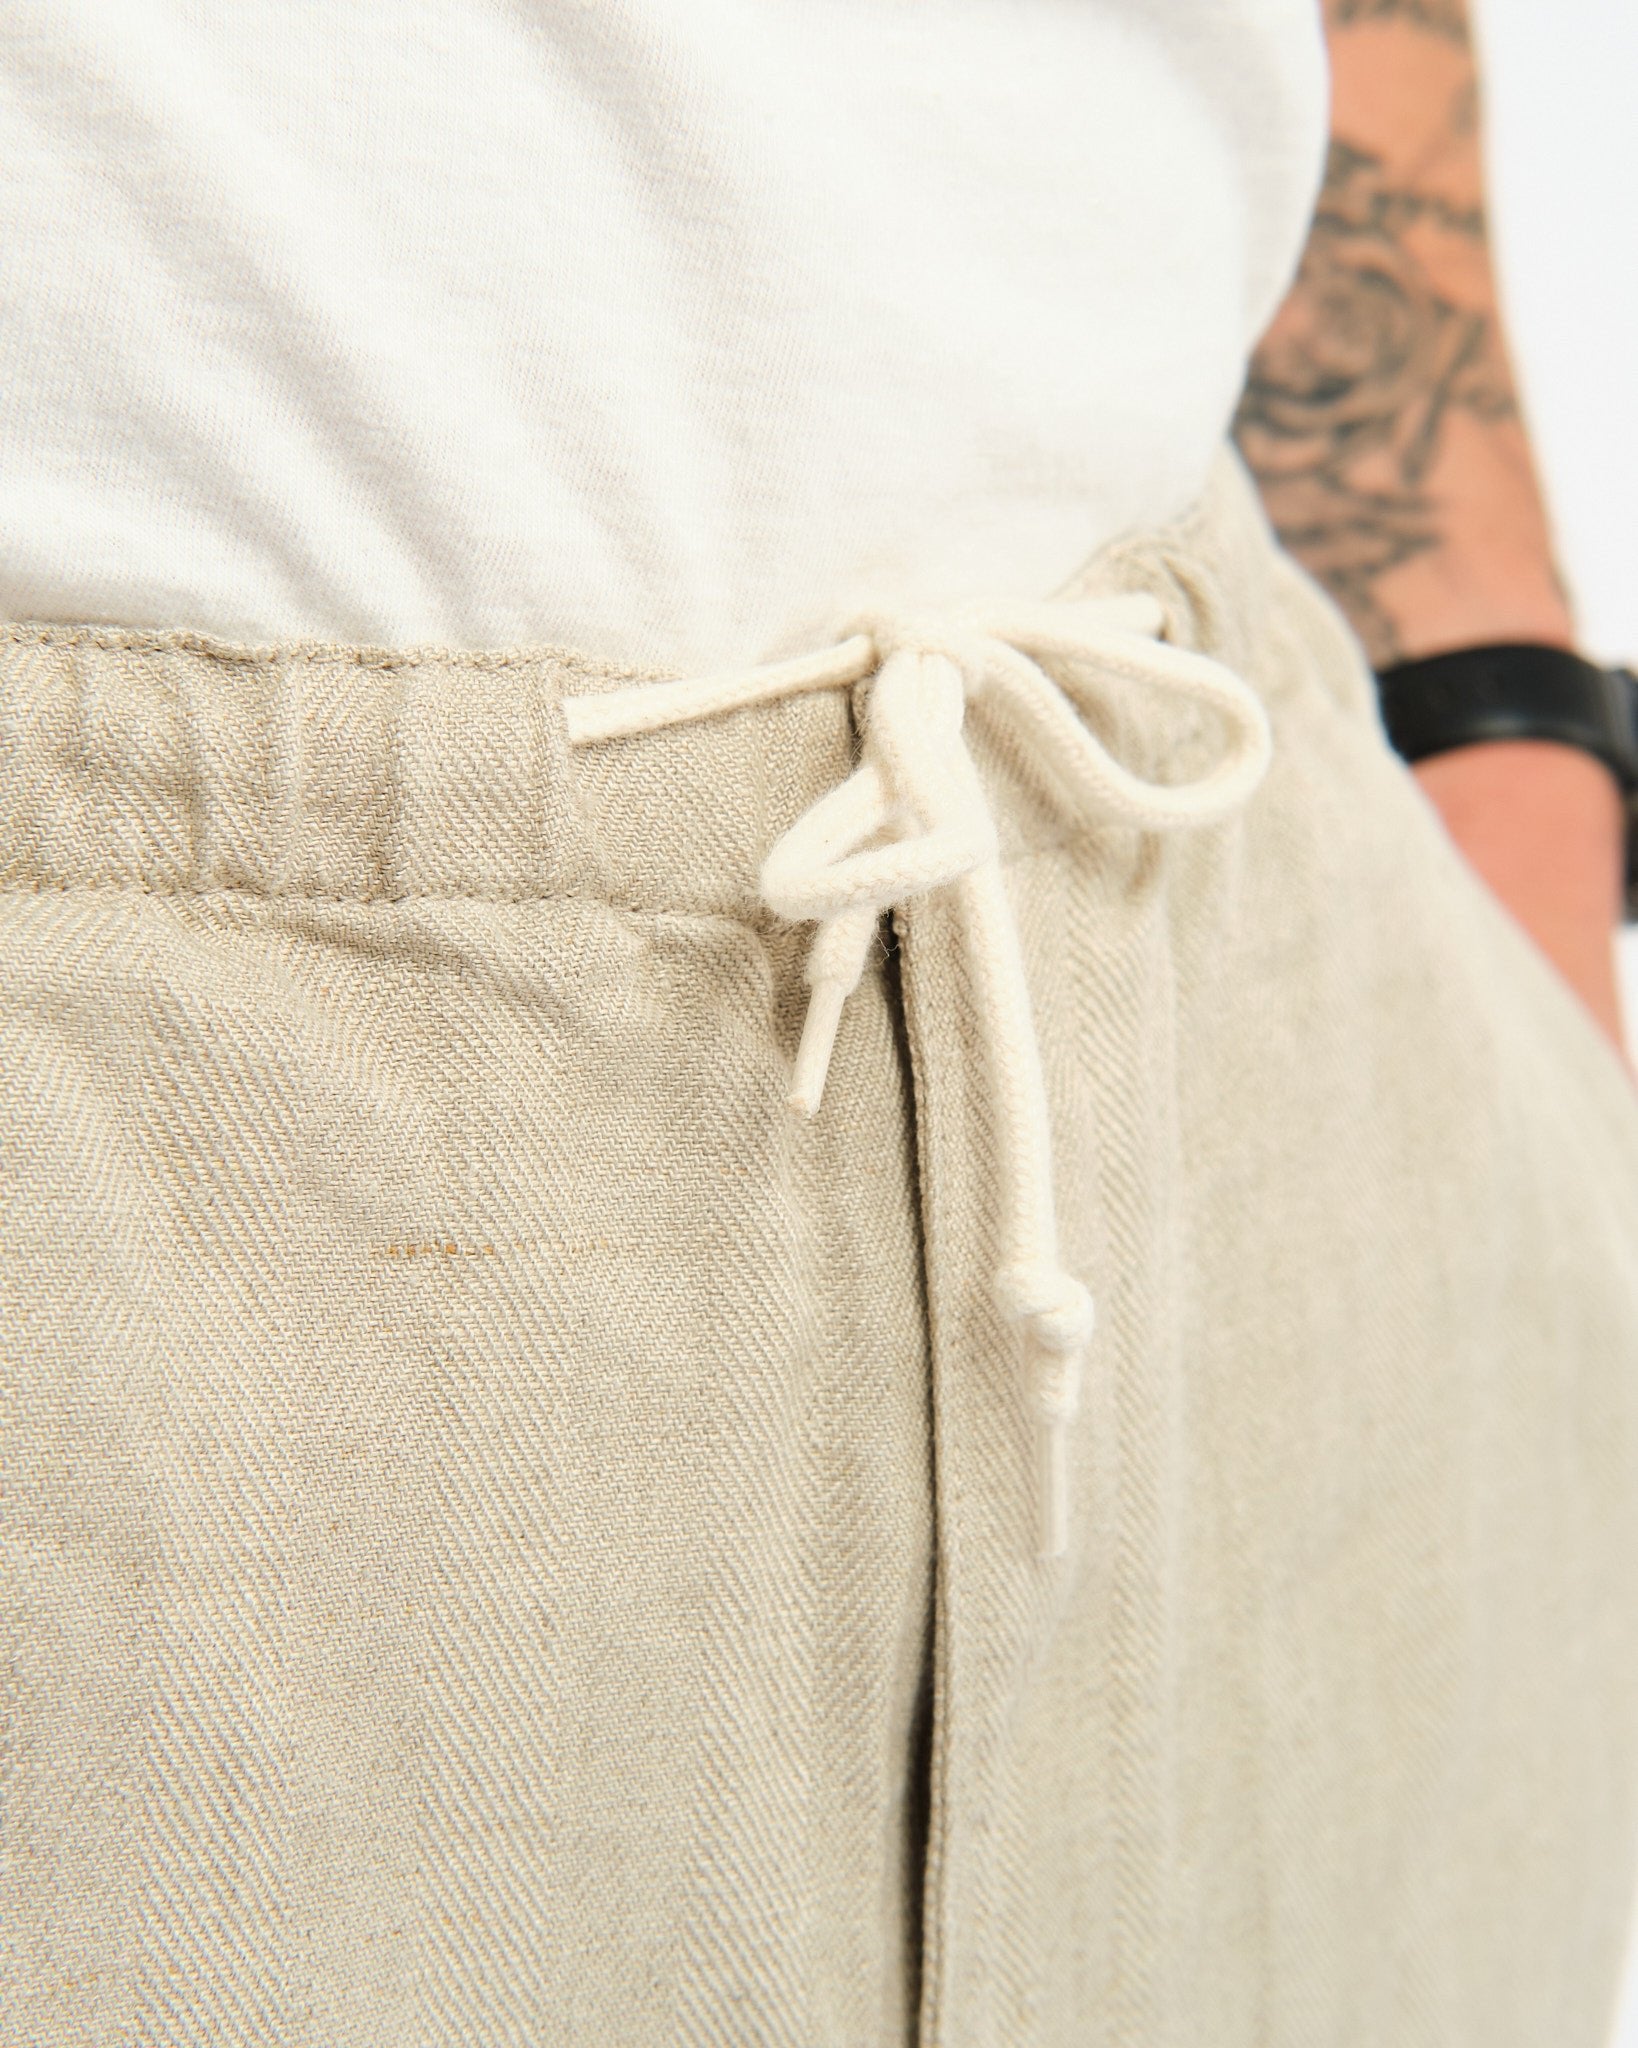 MIL Easy Pants Linen Herringbone Natural - Meadow